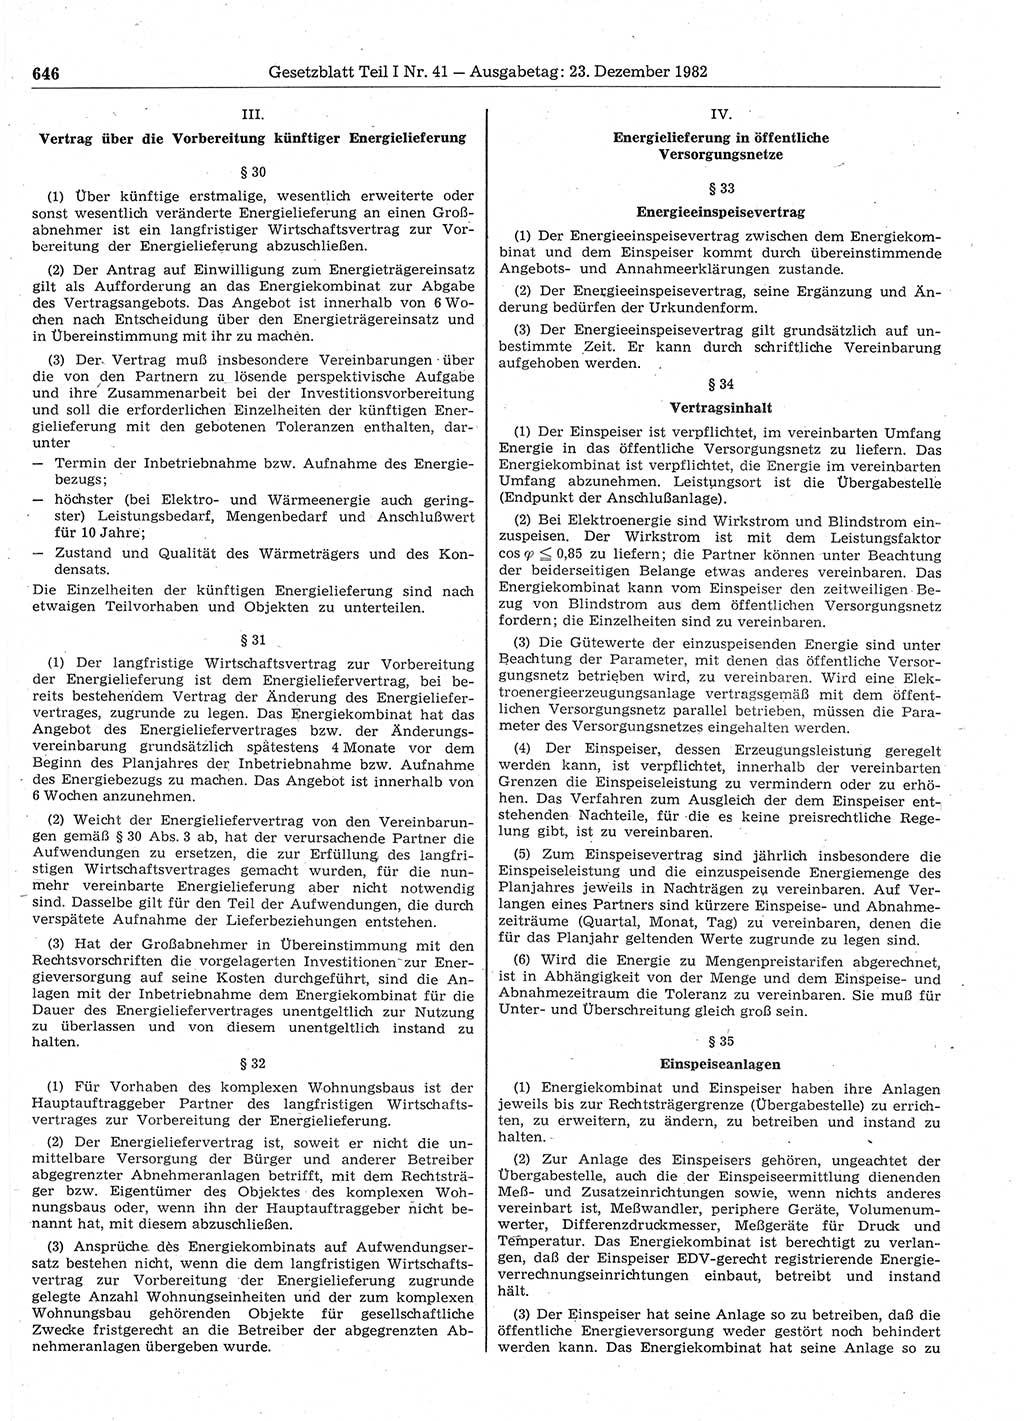 Gesetzblatt (GBl.) der Deutschen Demokratischen Republik (DDR) Teil Ⅰ 1982, Seite 646 (GBl. DDR Ⅰ 1982, S. 646)